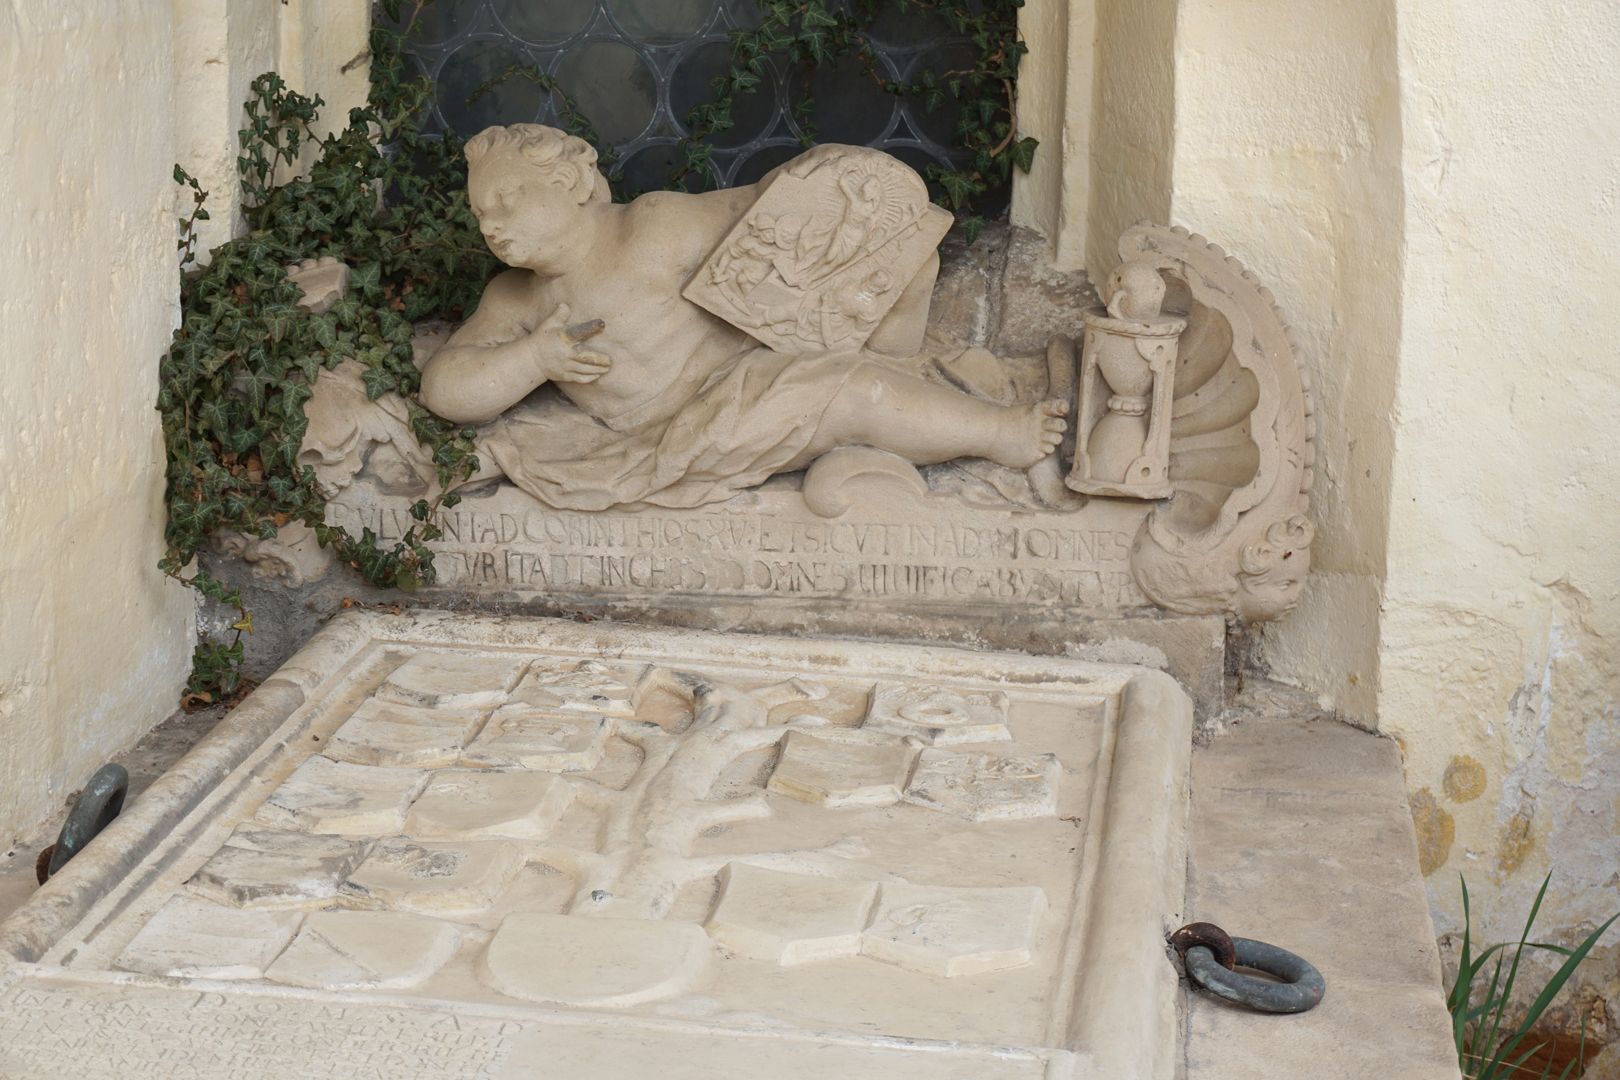 Pfinzing-Monument Im Vordergrund der Stammbaum auf der Platte, dahinter am Kopfstück Putto mit Reliefplatte, links Totenkopf, rechts Sanduhr